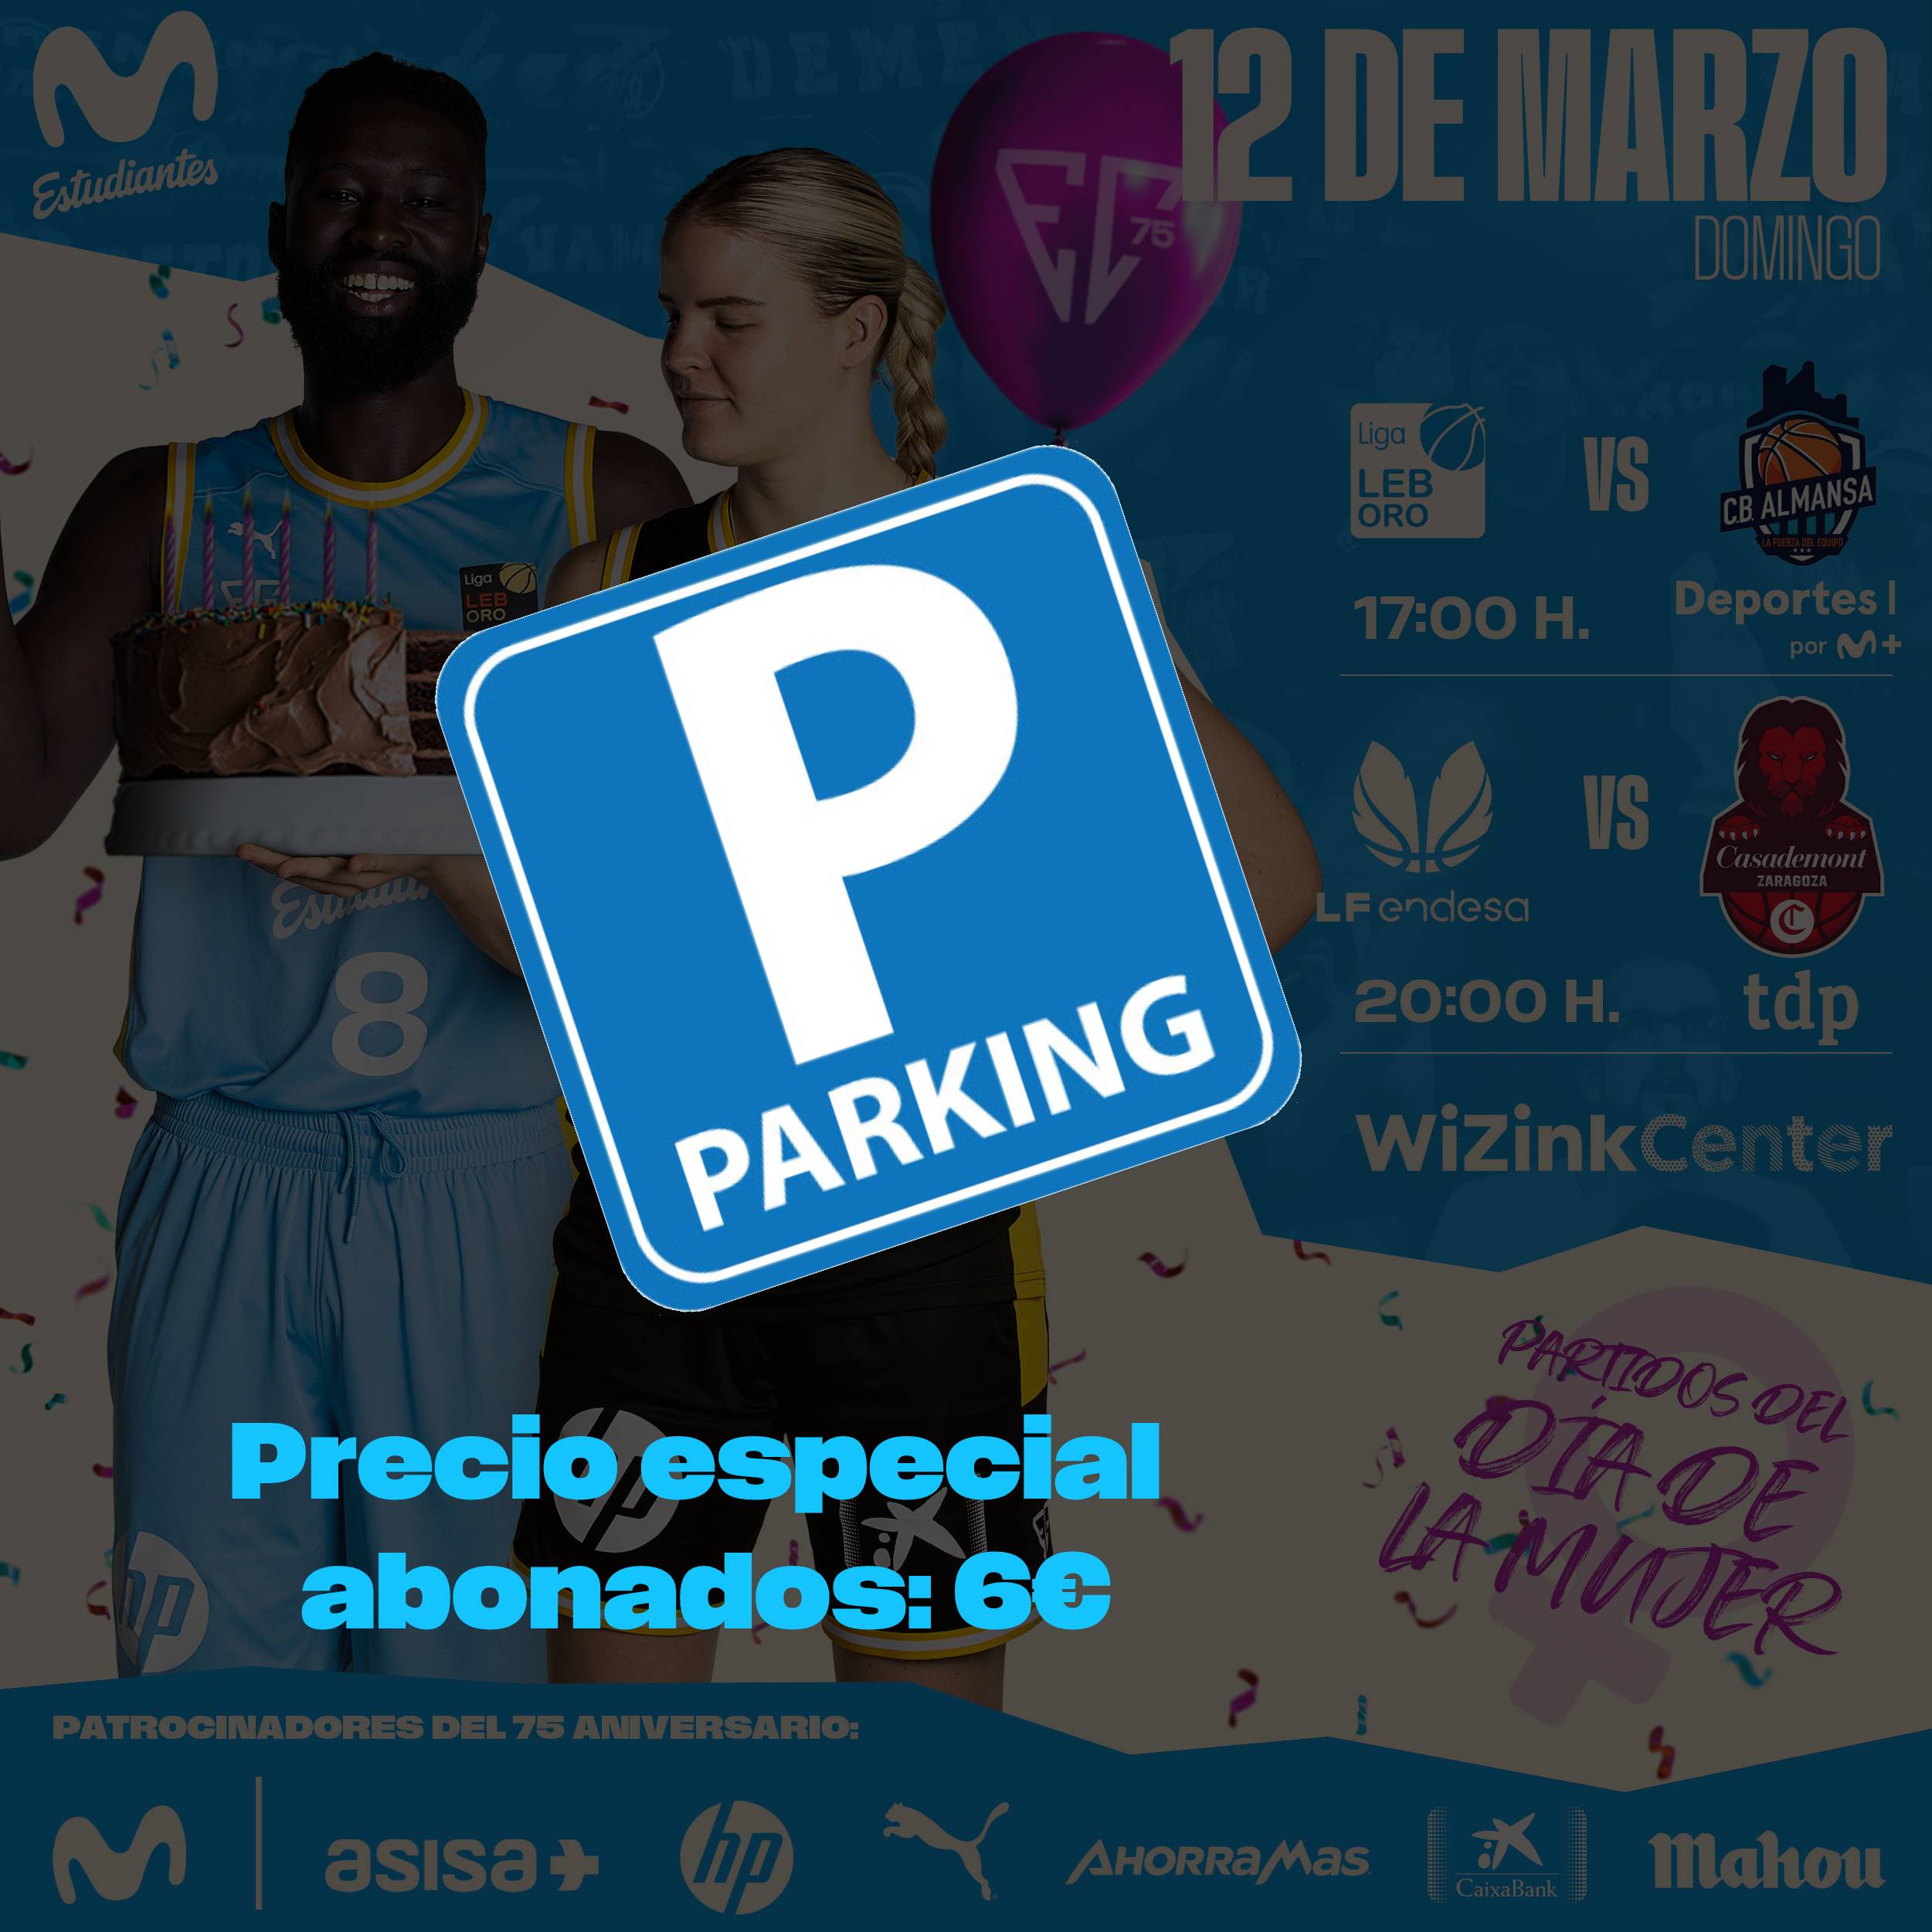 Parking WiZink Center: precio especial 6€ para la jornada doble del 12 de marzo